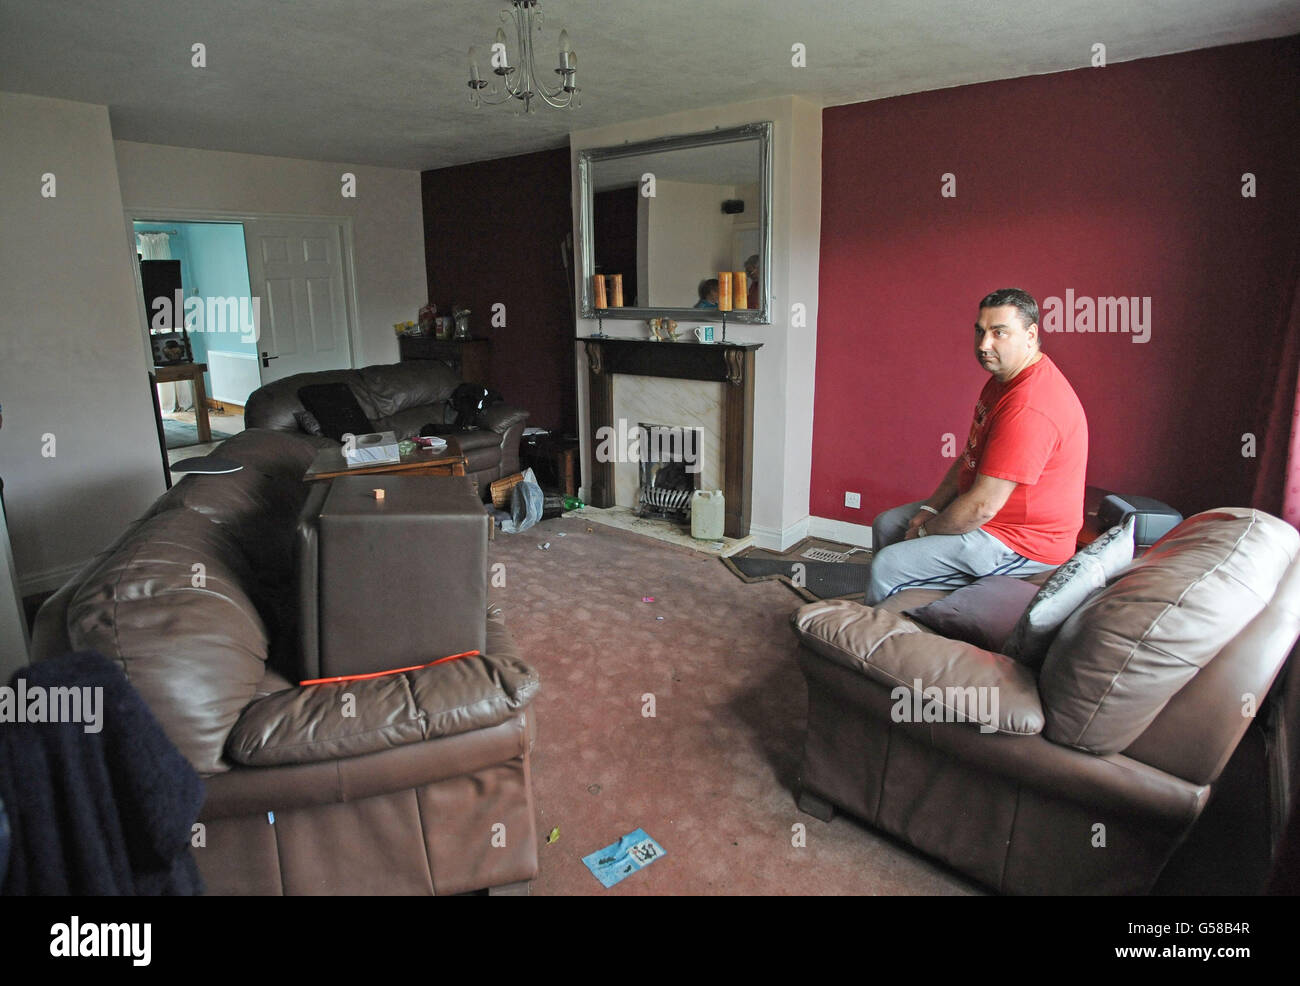 Paul Burrow untersucht das wasserbeschädigte Wohnzimmer in seinem Haus in Svillington, Leeds, nachdem am Wochenende Überschwemmungen durch die Gegend rissen. Stockfoto